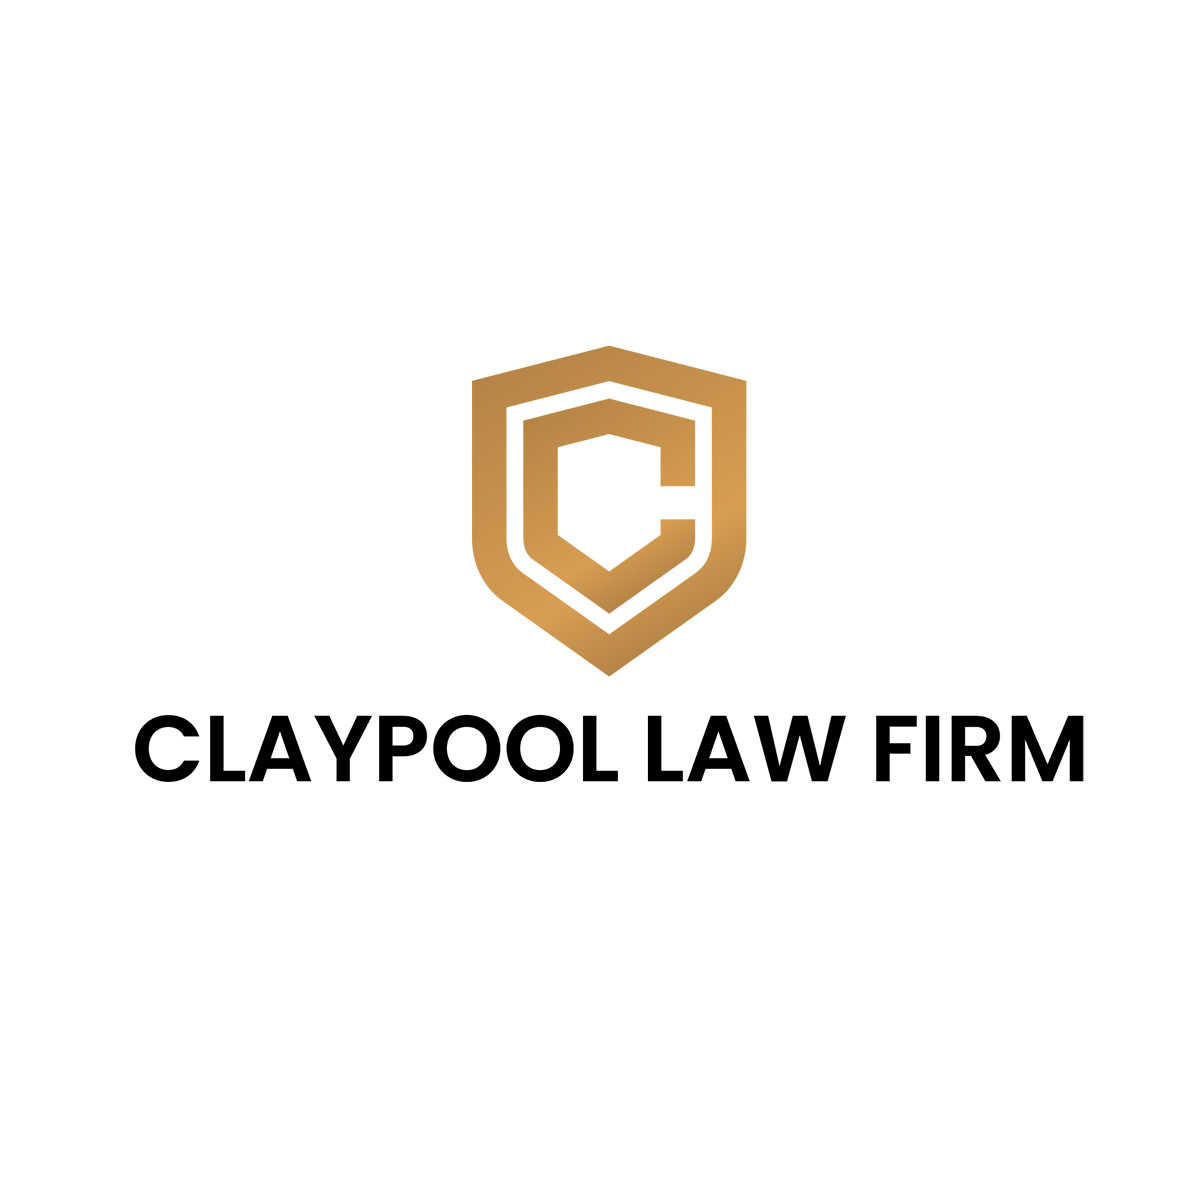 Claypool Law Firm - Pasadena, CA 91103 - (626)602-1333 | ShowMeLocal.com